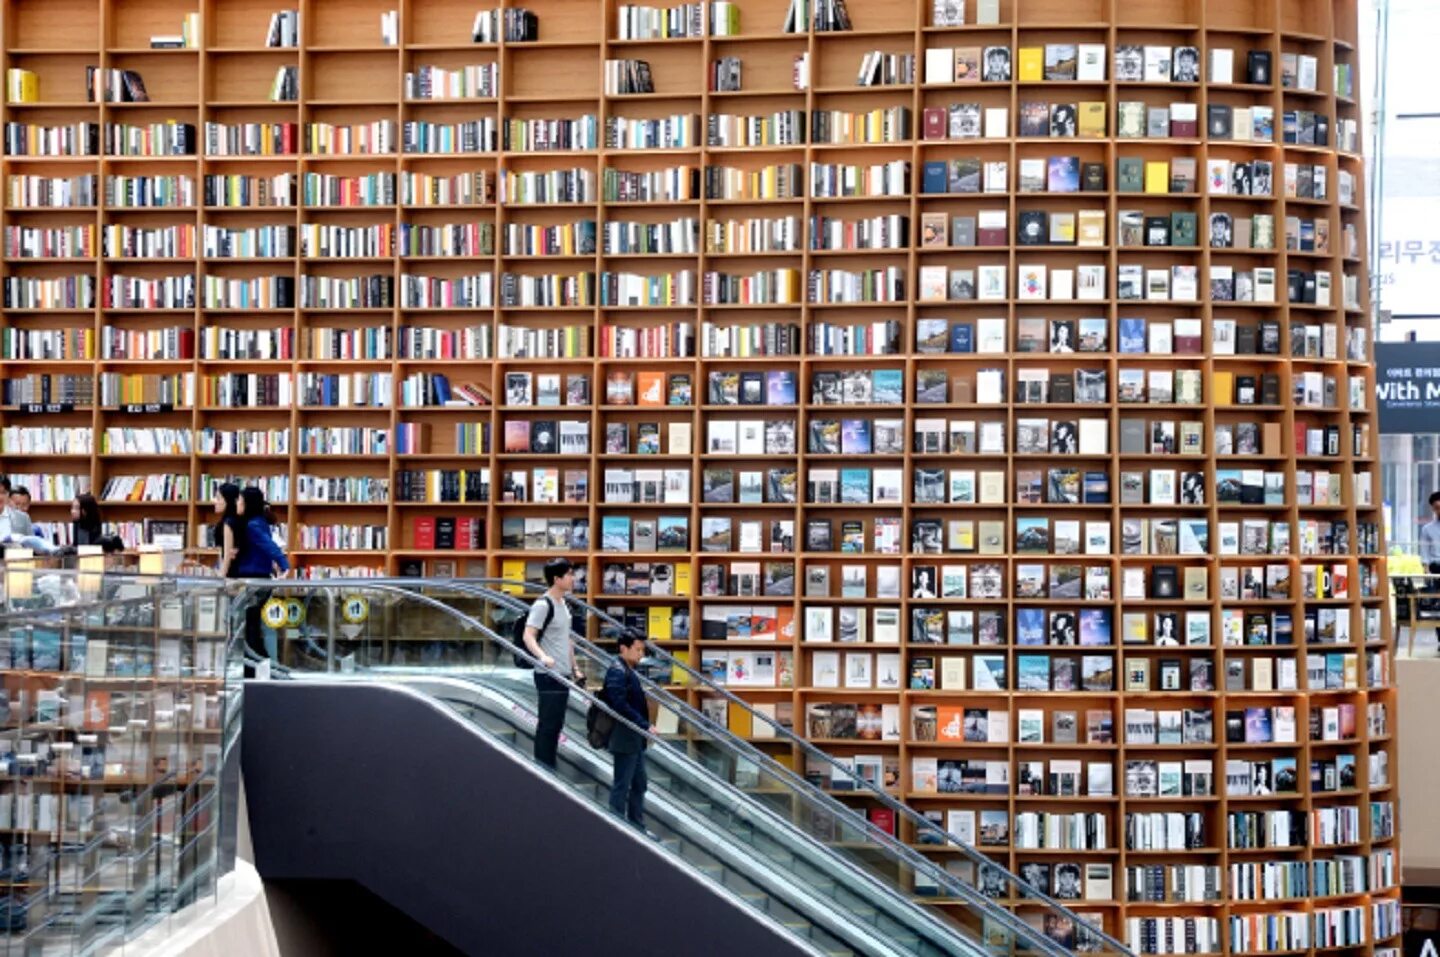 Look library. Библиотека Сеул COEX. Библиотека Starfield Library. Южная Корея. Сеул библиотека Starfield. Национальная библиотека Южной Кореи.